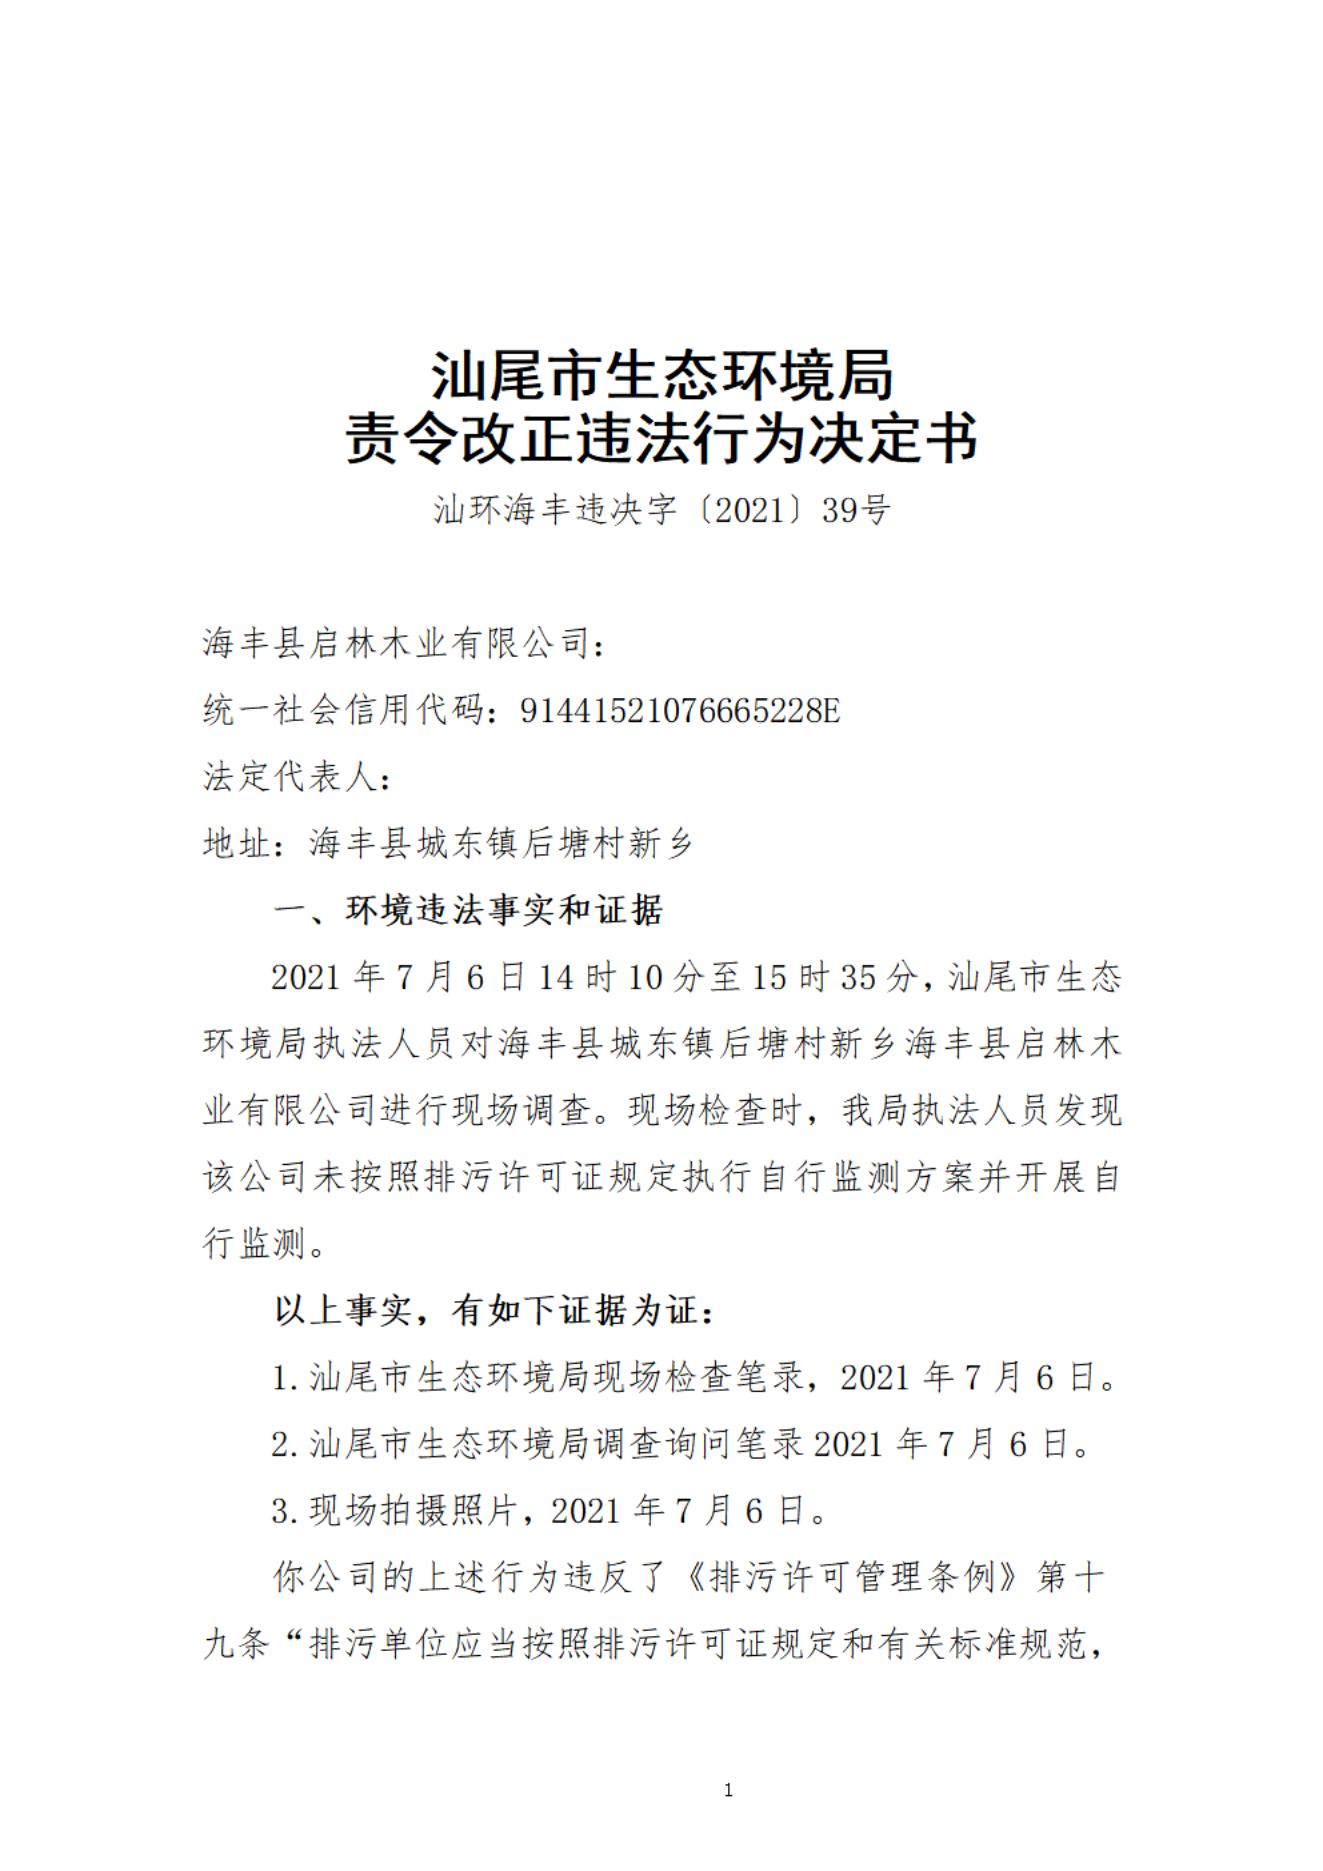 海丰县启林木业有限公司决定书_20220106093825_00.jpg